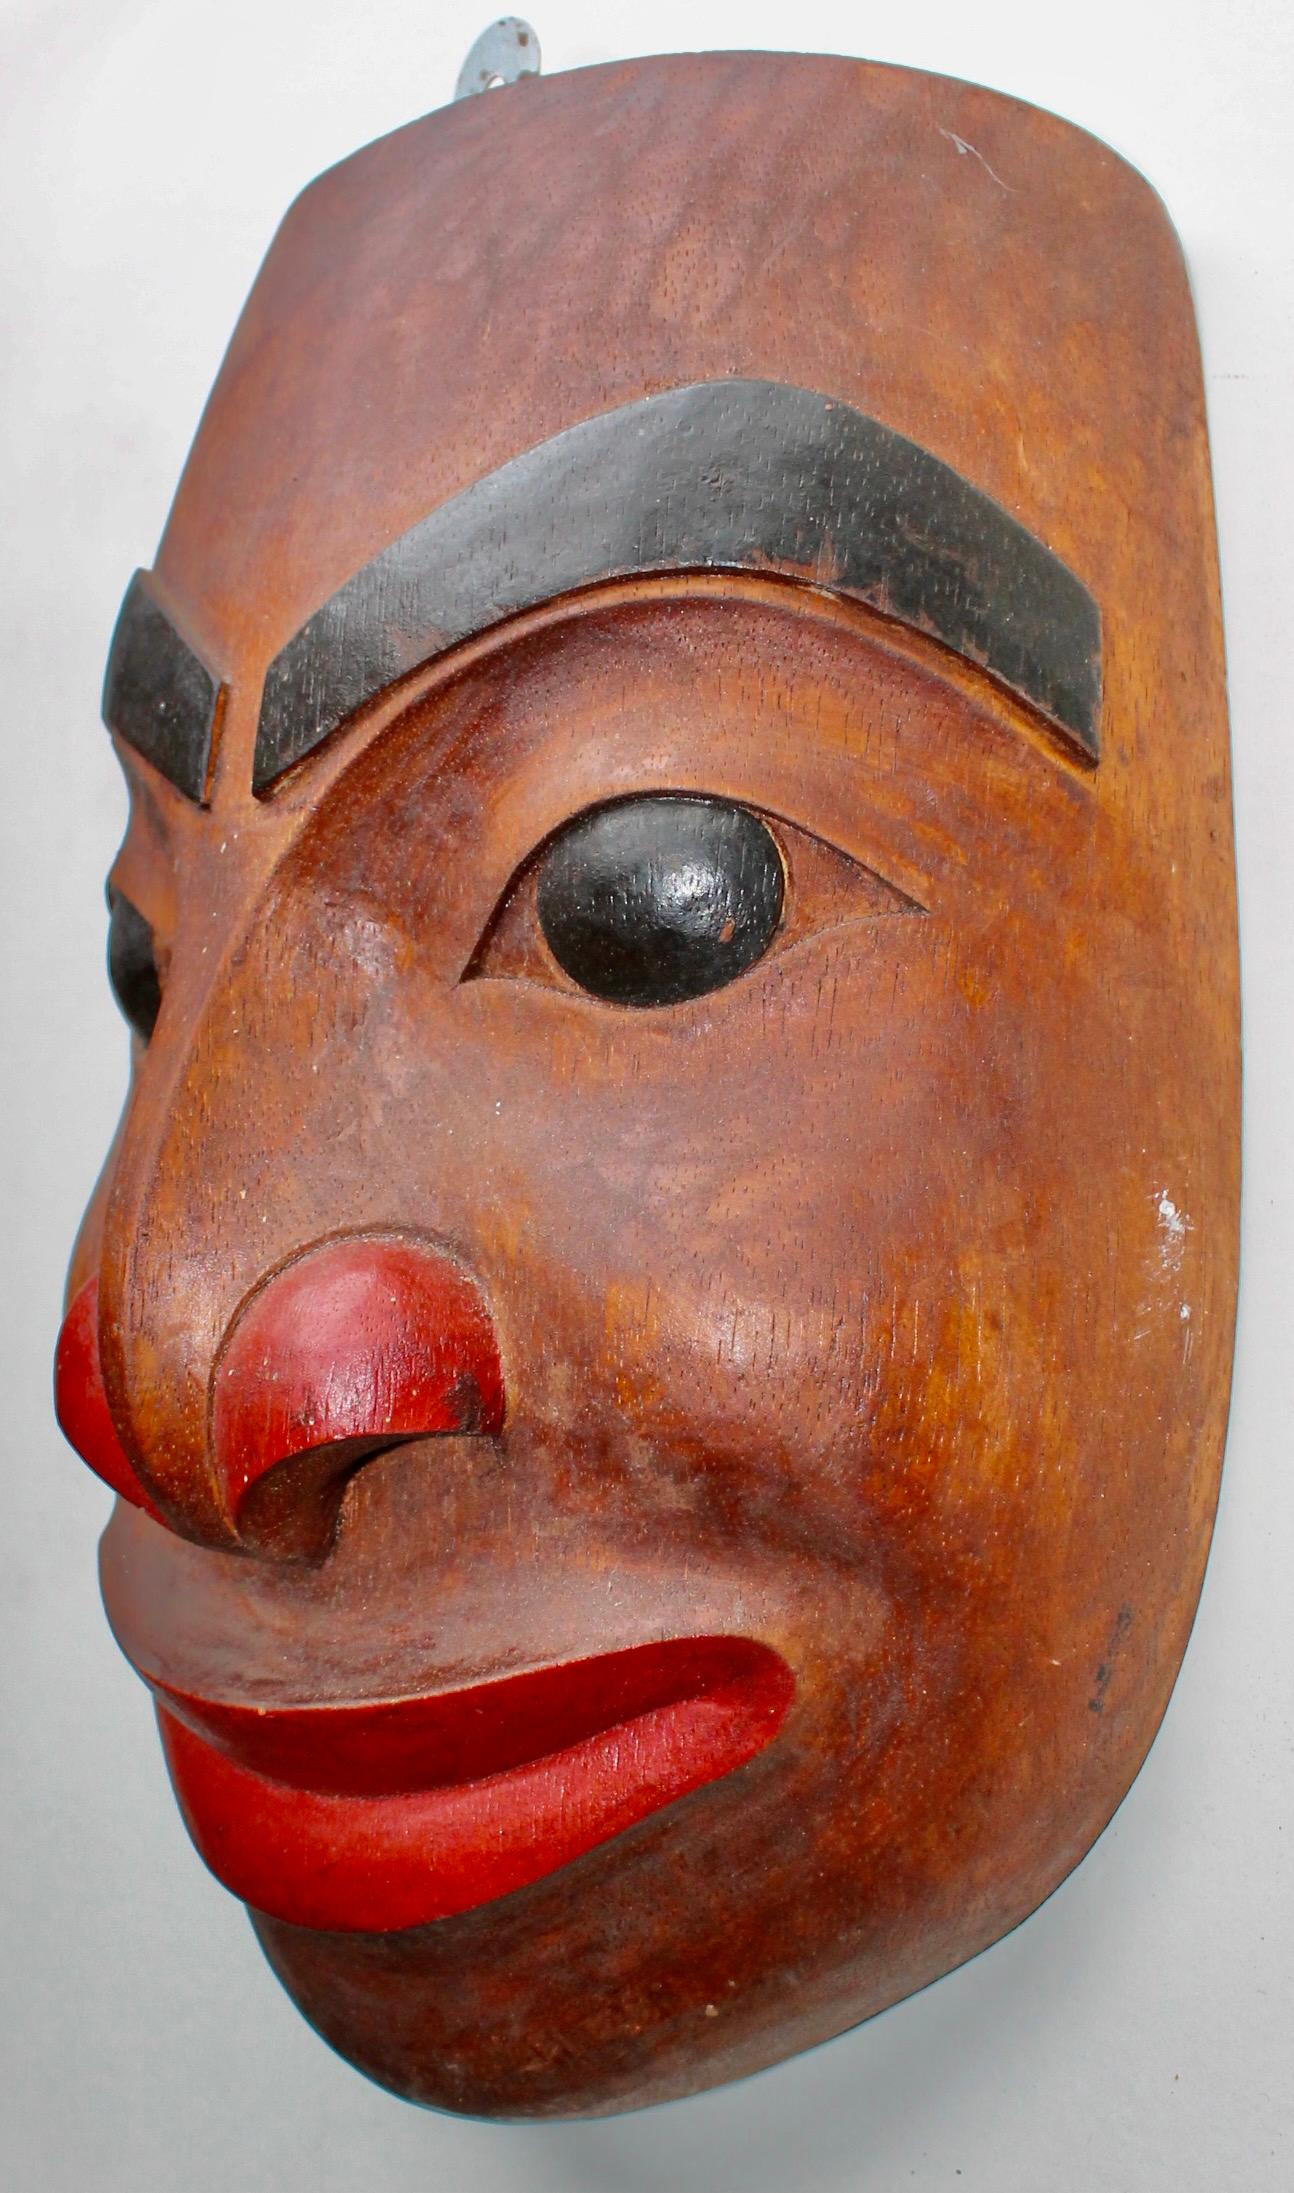 Masque en bois de style traditionnel du nord-ouest de l'Inde, fabriqué à la main et datant du milieu du siècle dernier.
Style.